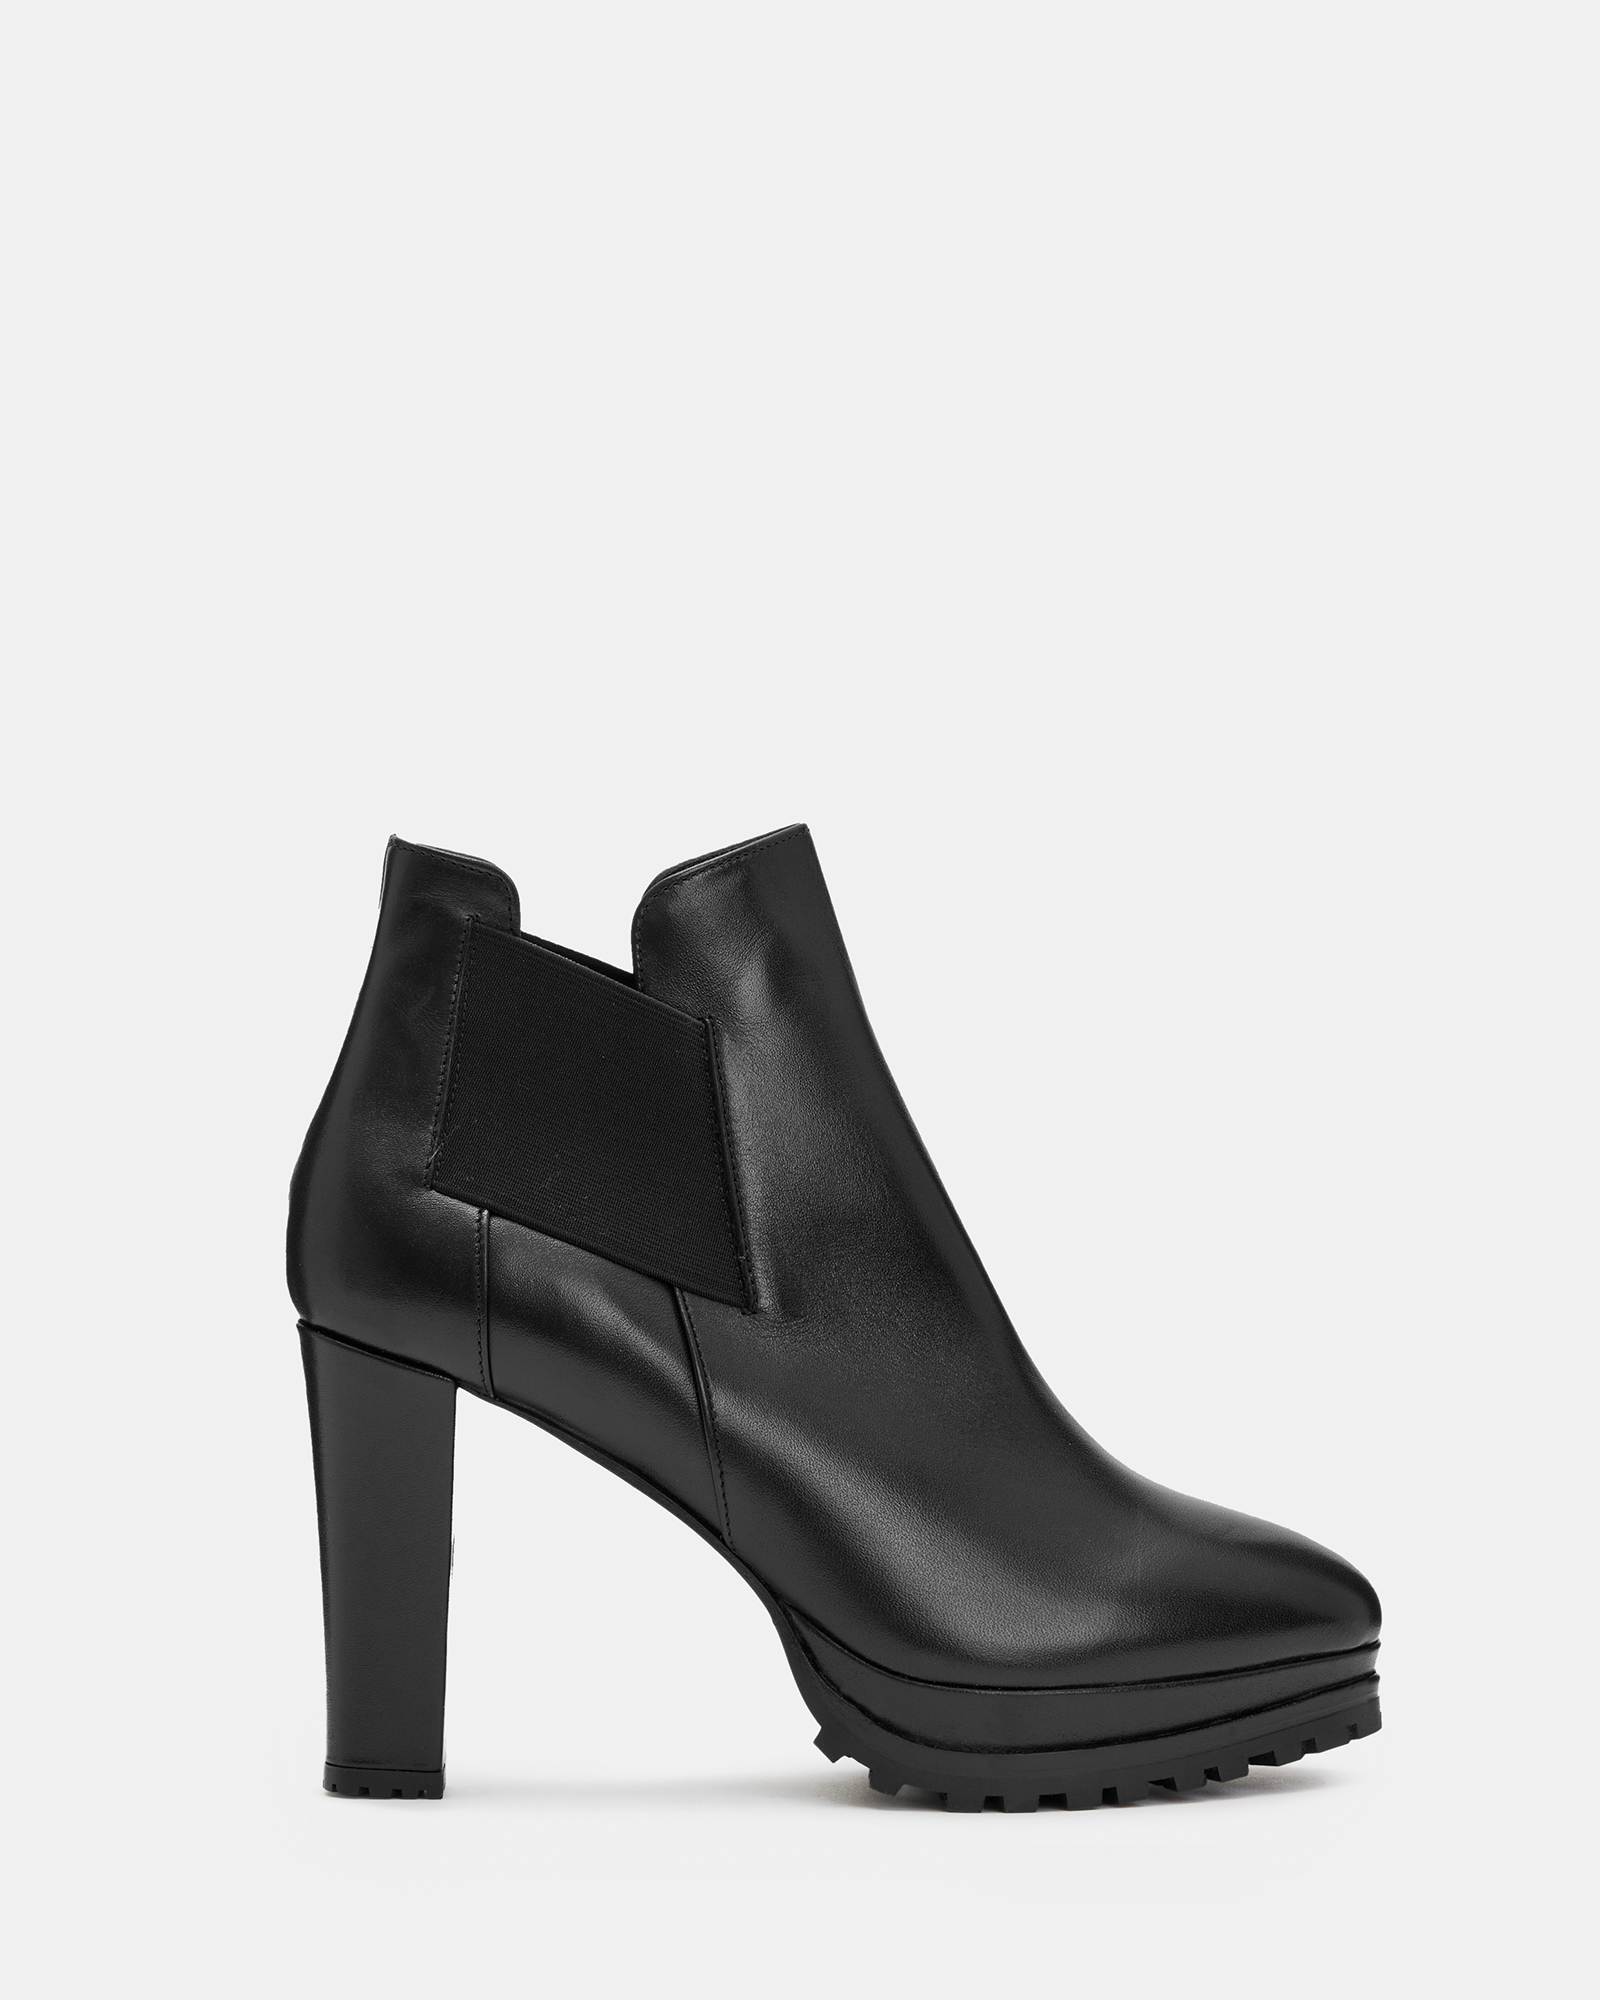 AllSaints Women's Leather Essential Sarris Boot, Black, Size: UK 5/US 7/EU 38